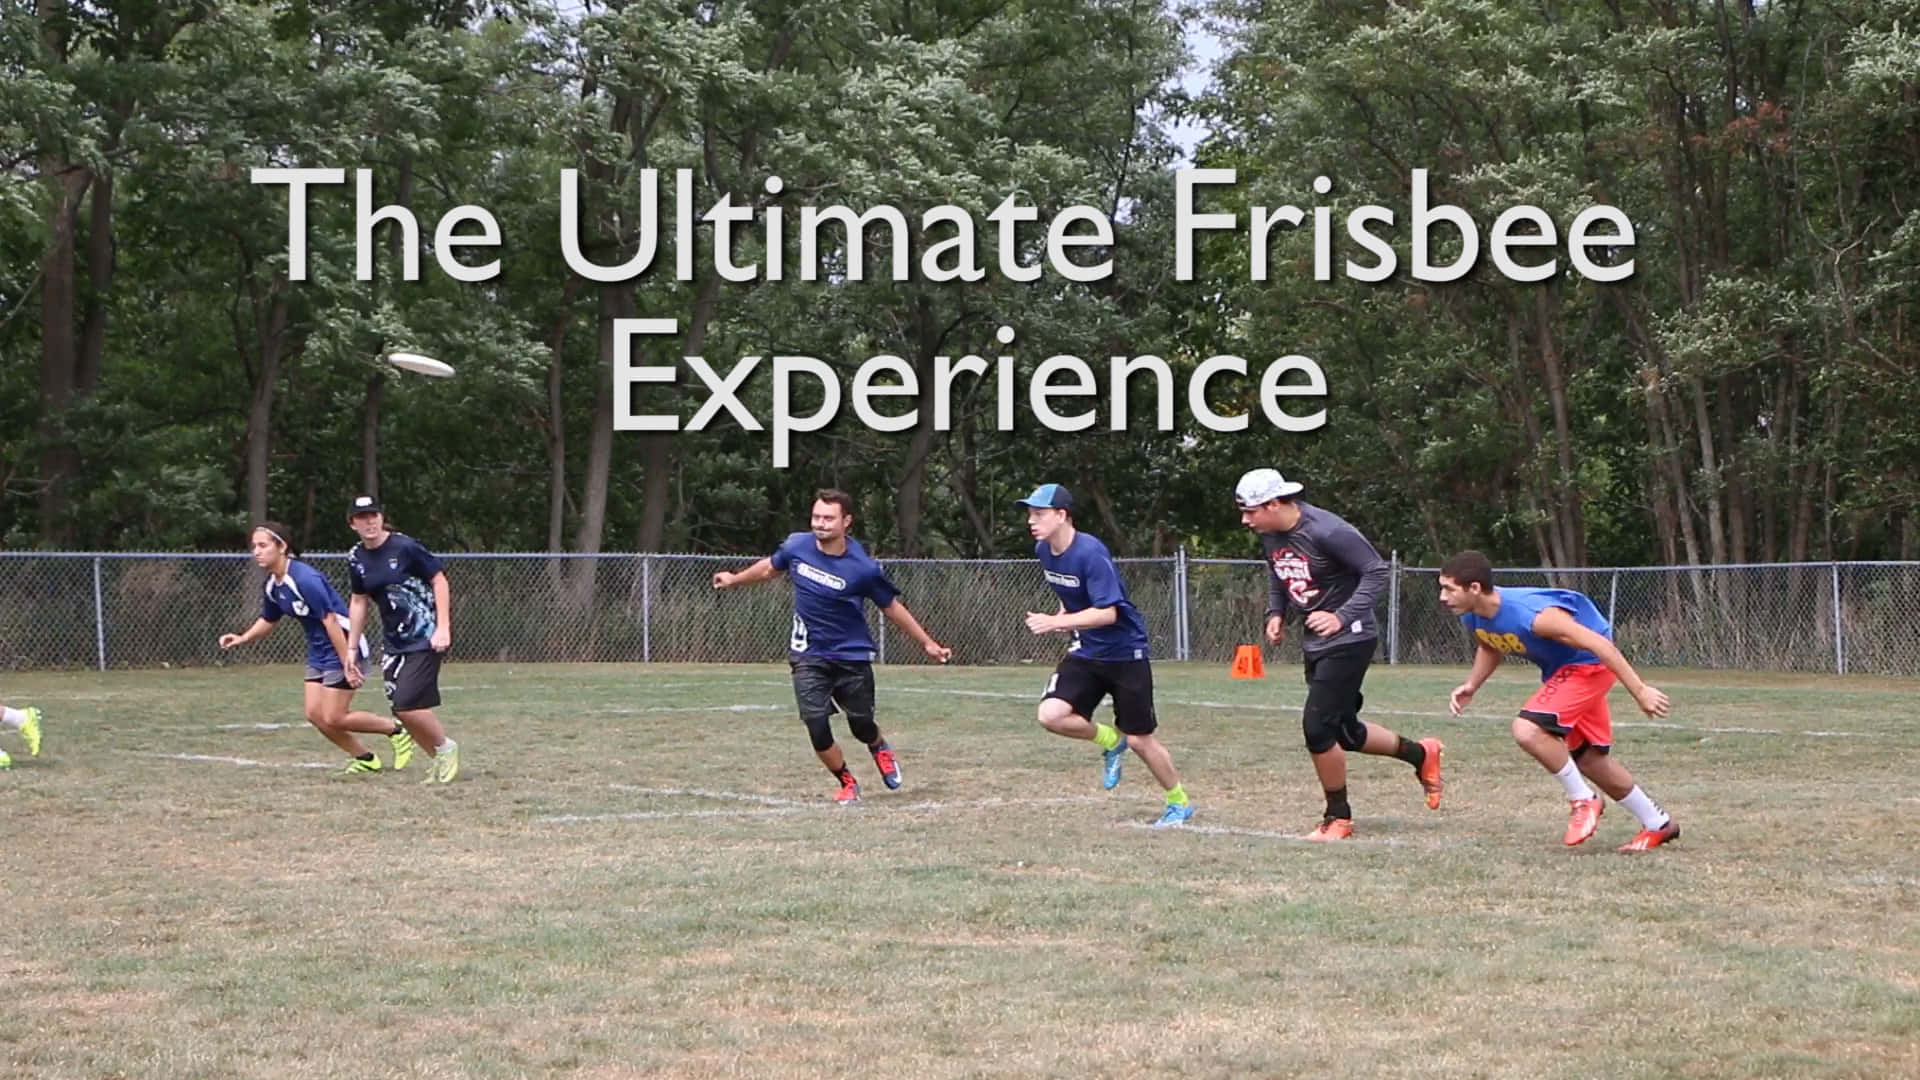 Spielerfahrung1920x1080 Ultimate Frisbee Hintergrund